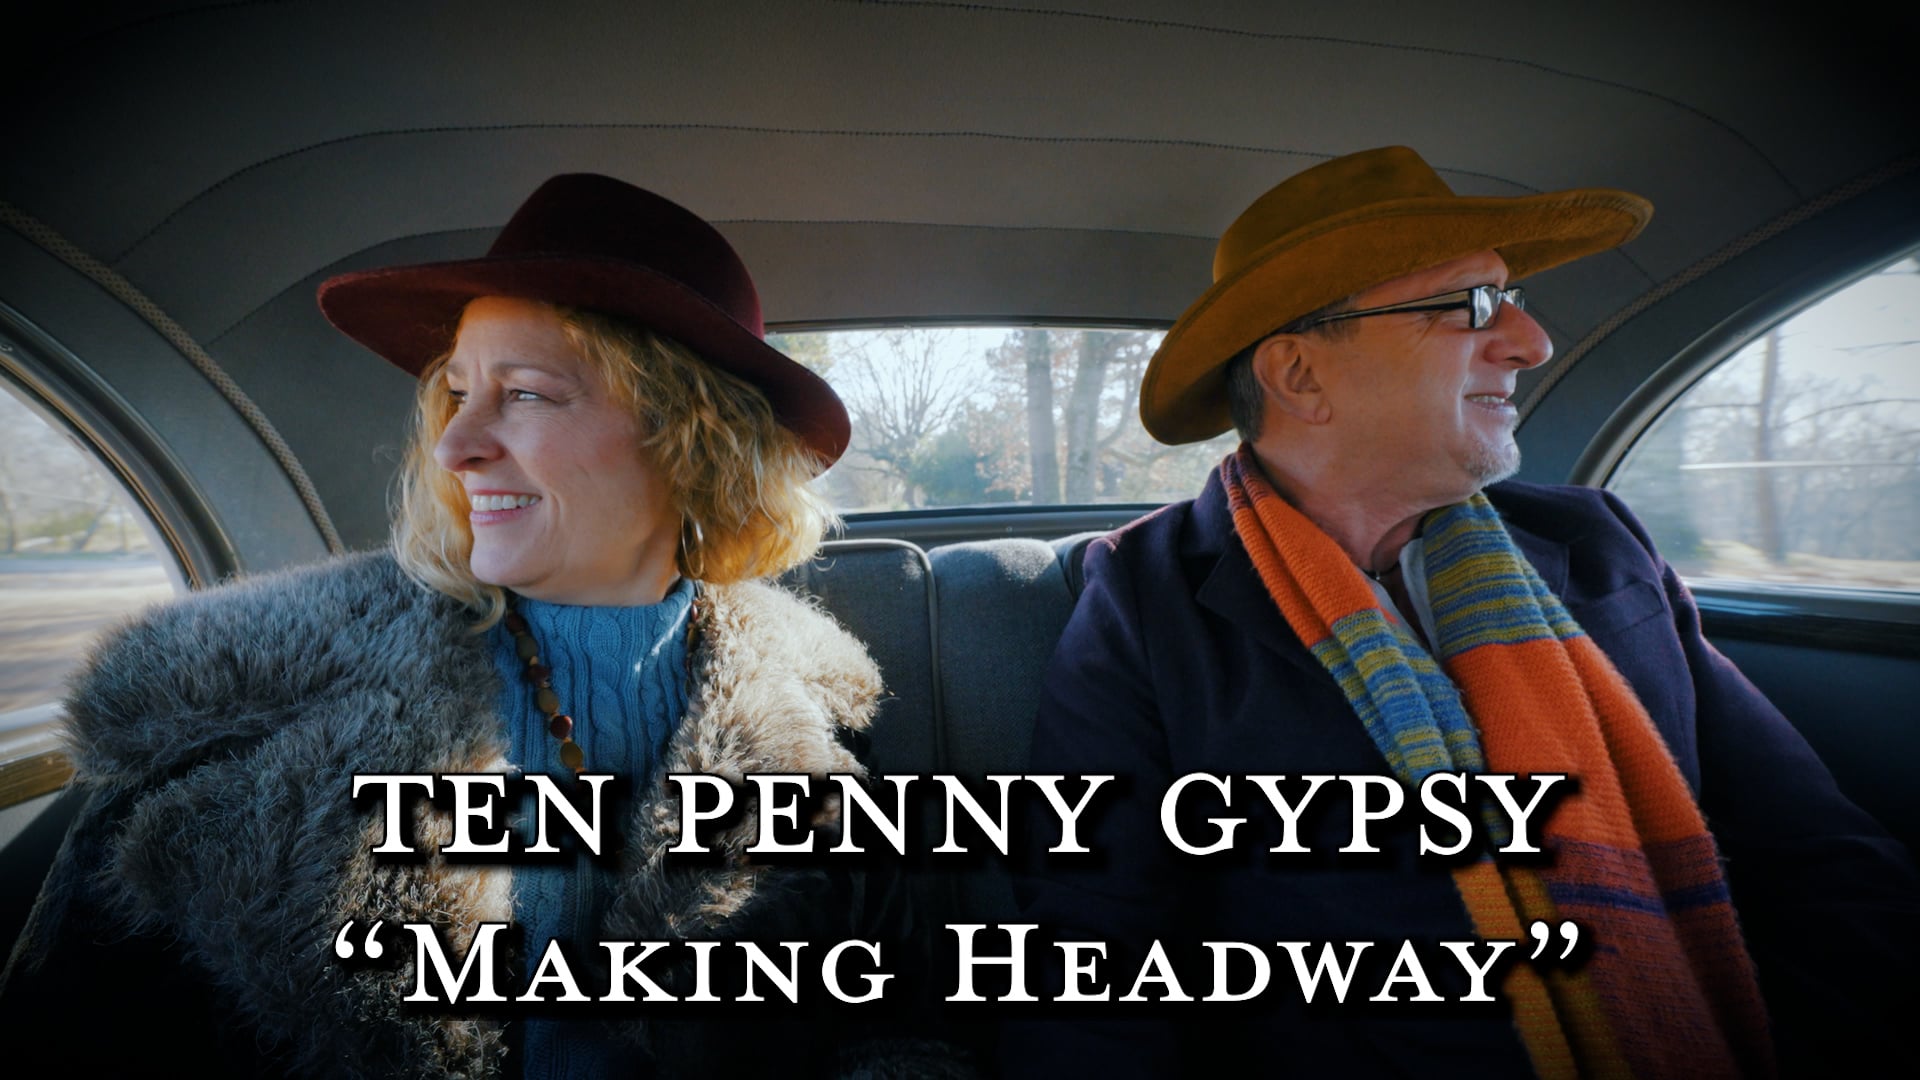 Ten Penny Gypsy - "Making Headway"